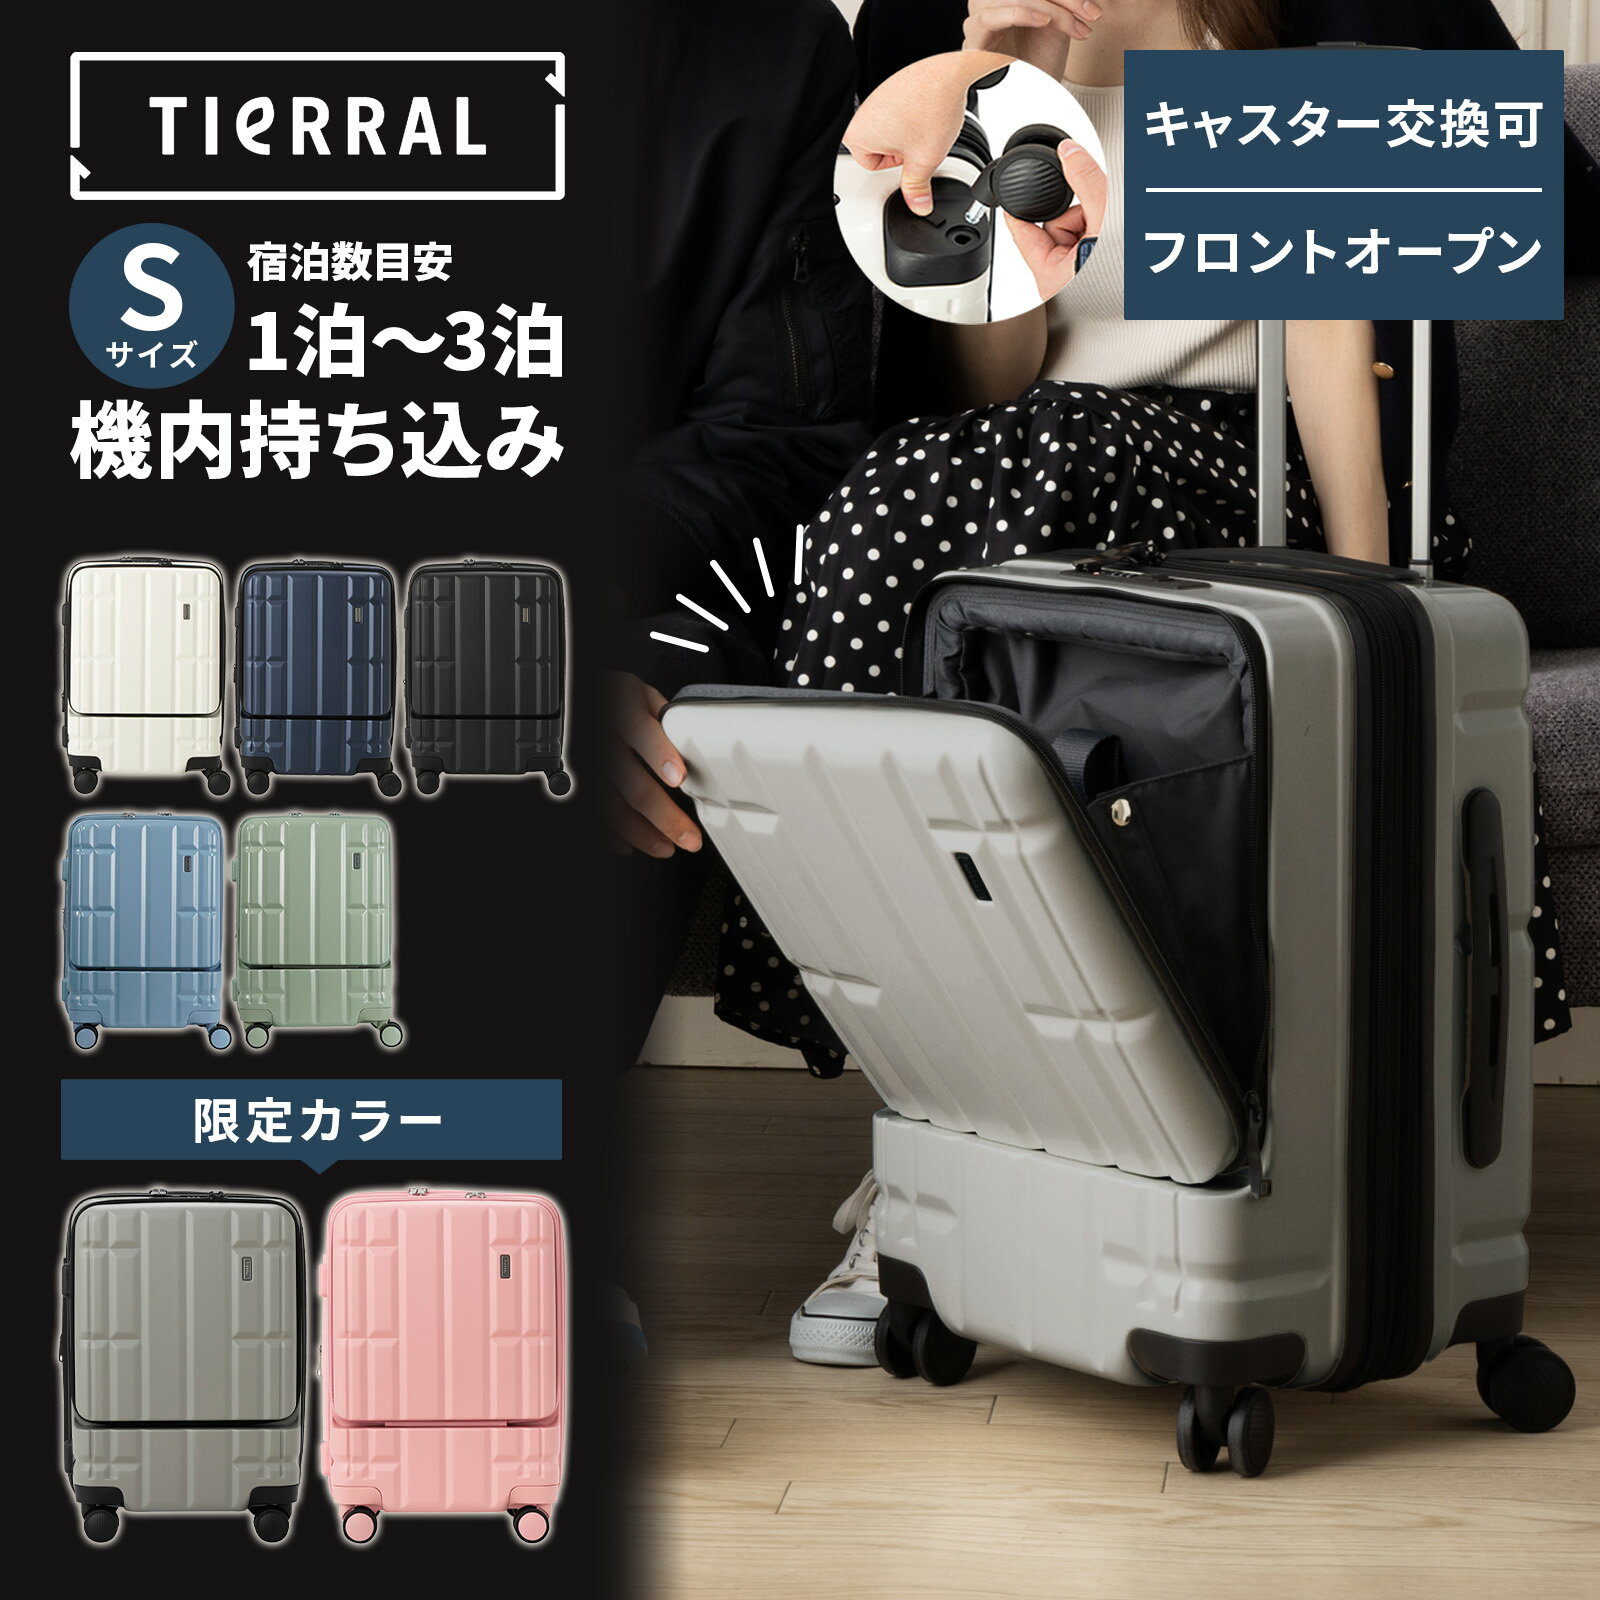 【公式】 スーツケース Sサイズ 機内持ち込み フロントオー